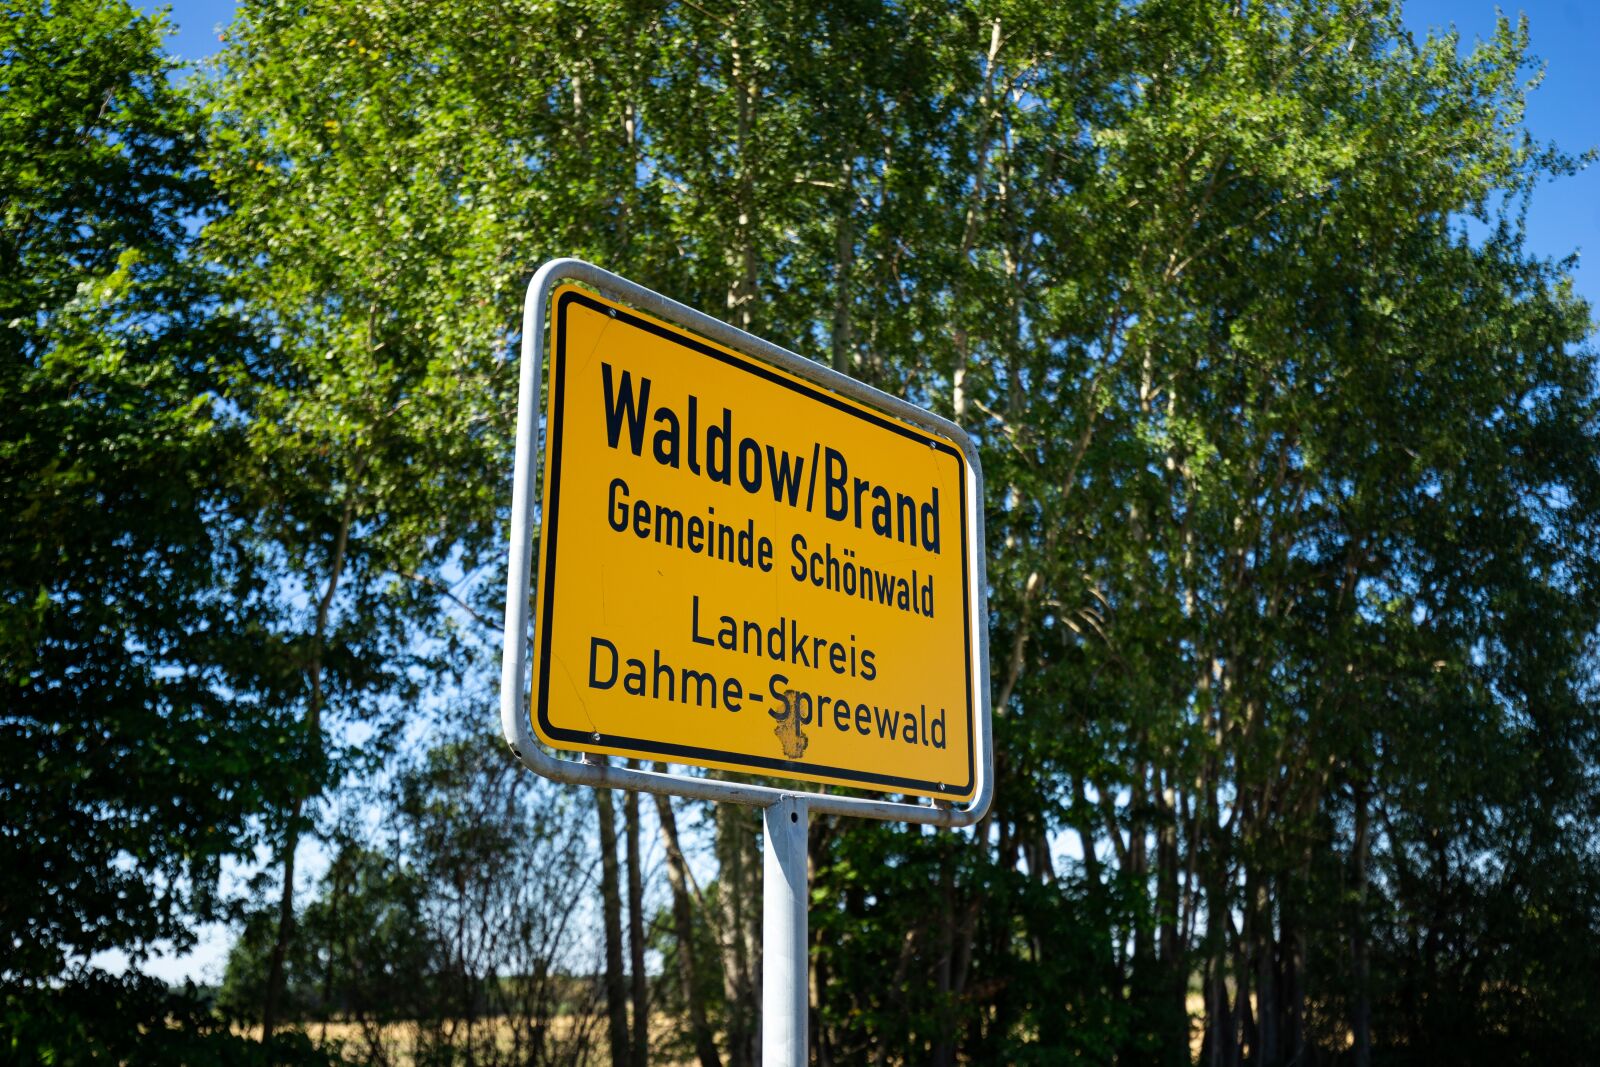 DT 16-35mm F4 SAM sample photo. Waldow, village, brandenburg photography